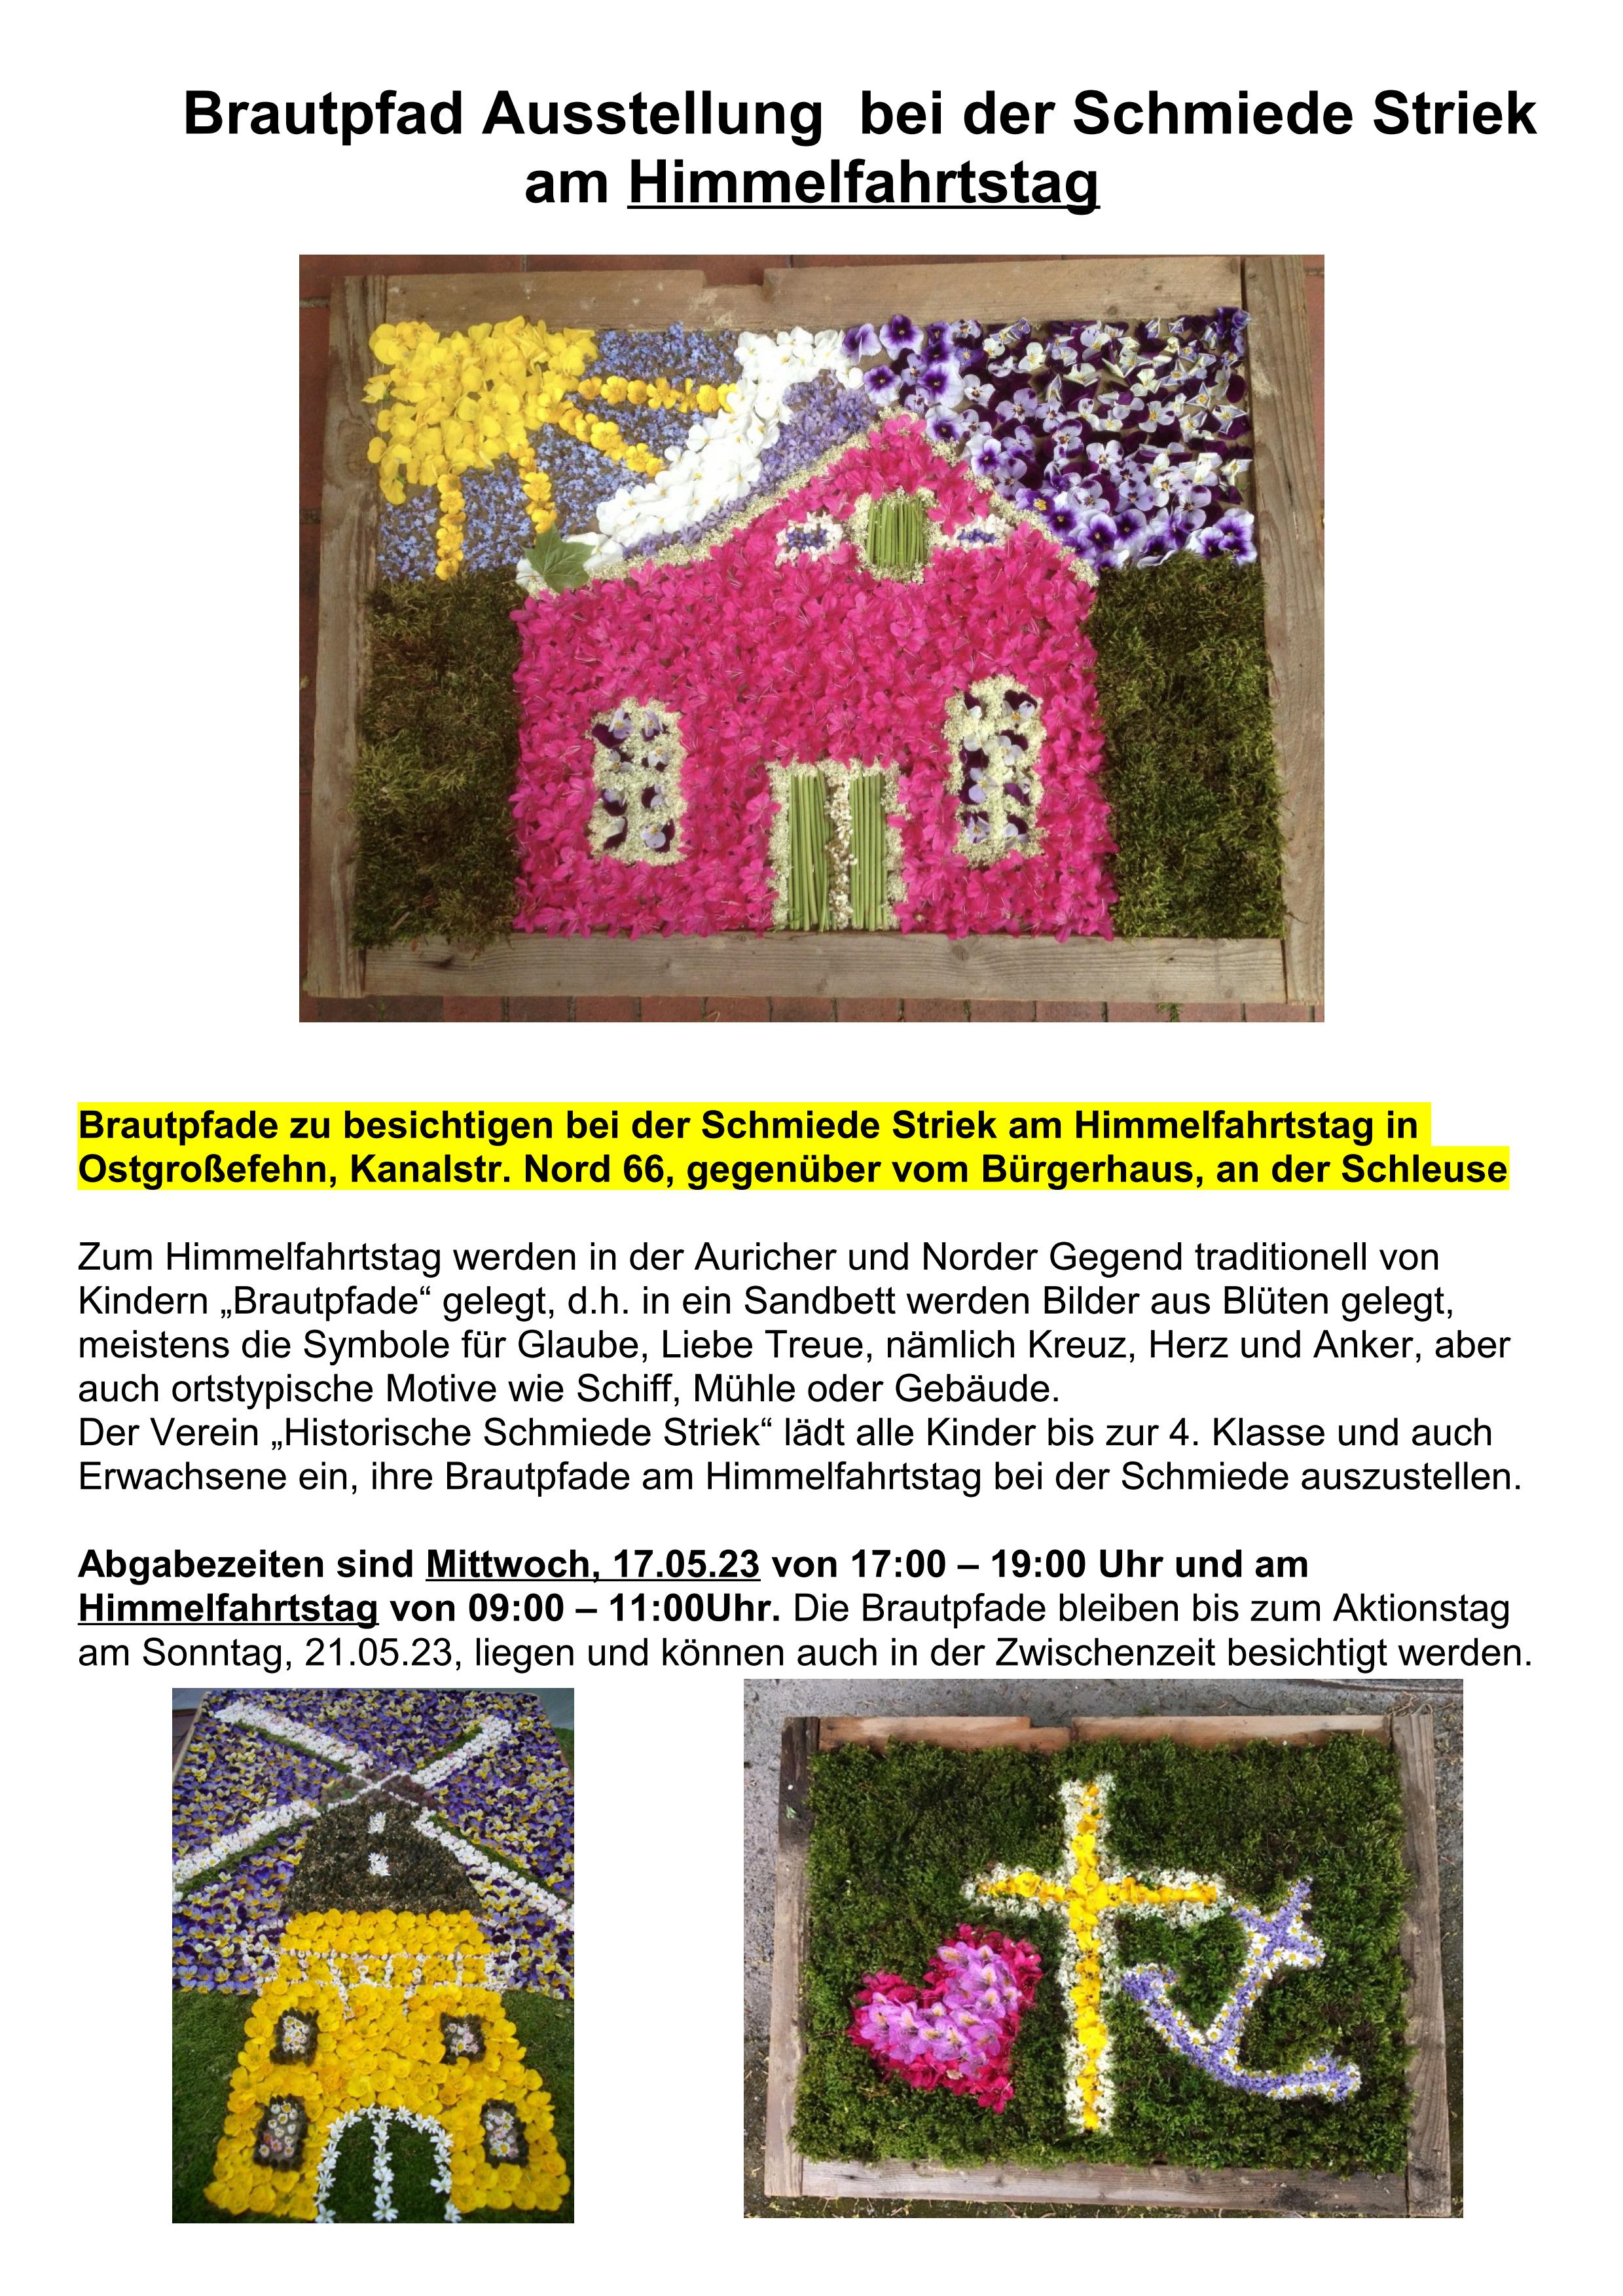 Plakat Brautpfade bei der Schmiede Striek am Himmelfahrtstag in Ostgroßefehn 01